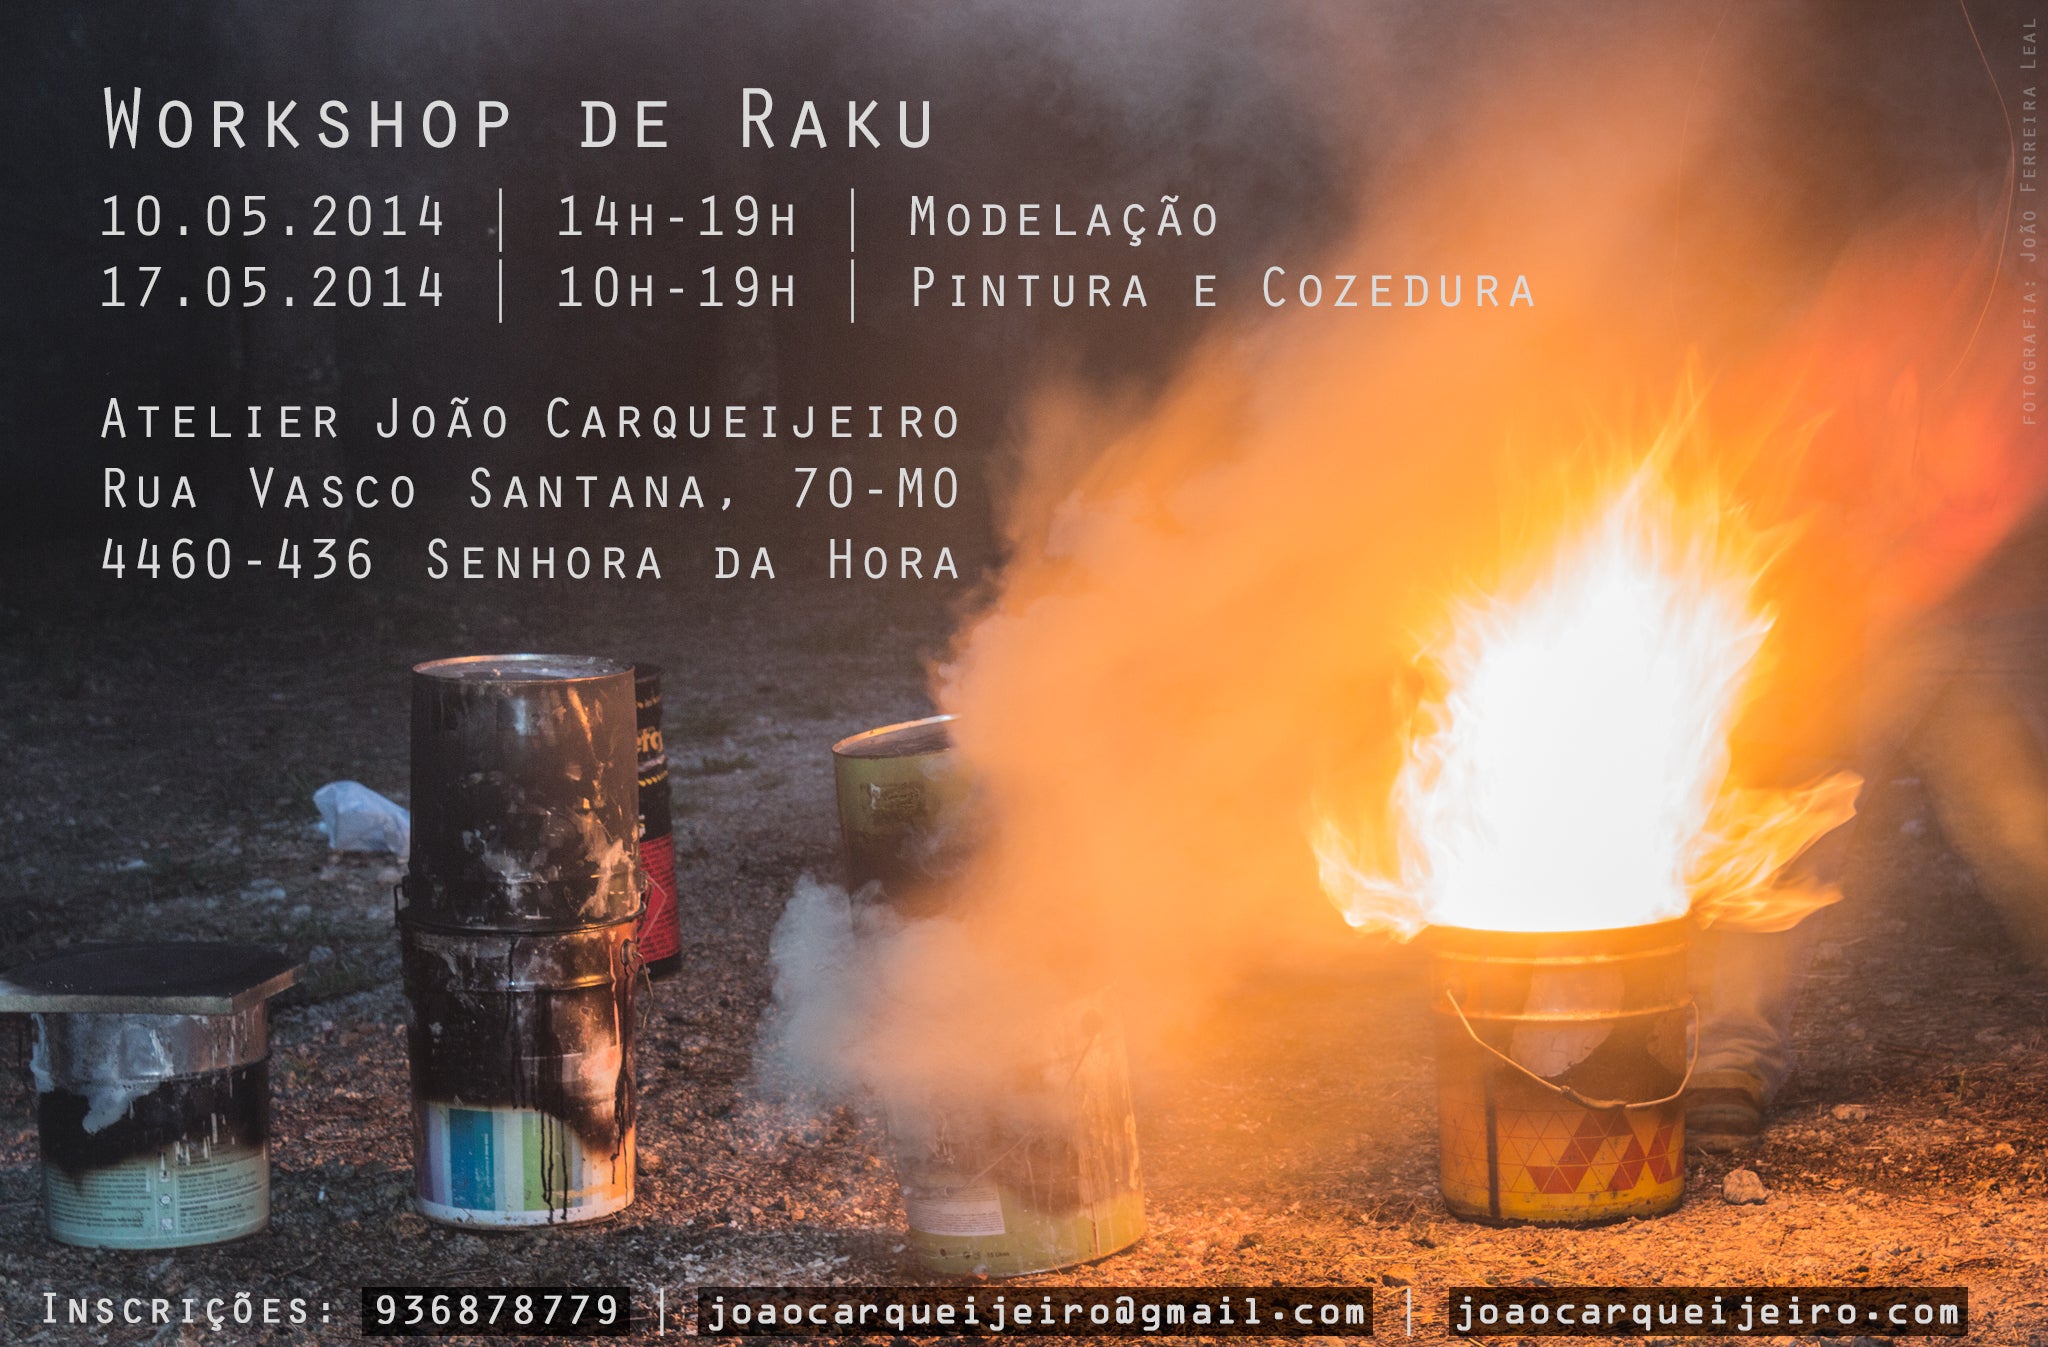 Promotional poster for João Carqueijeiro's ceramic workshop